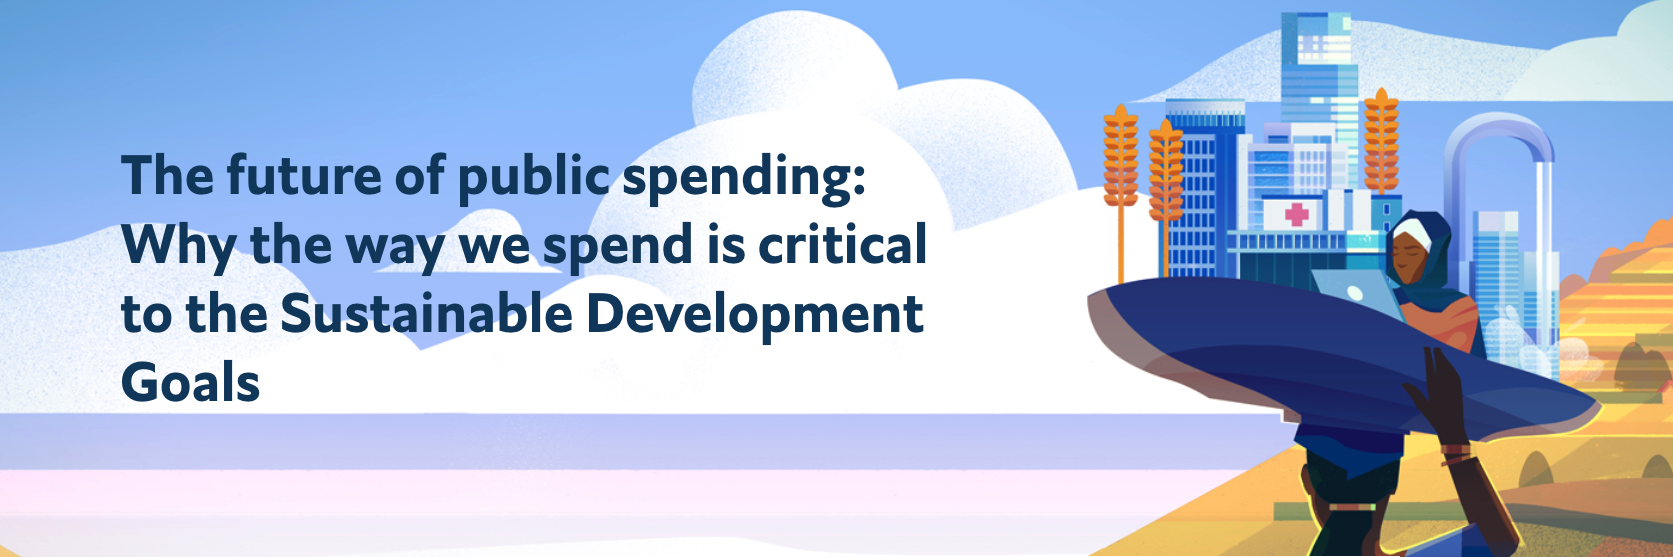 The future of public spending